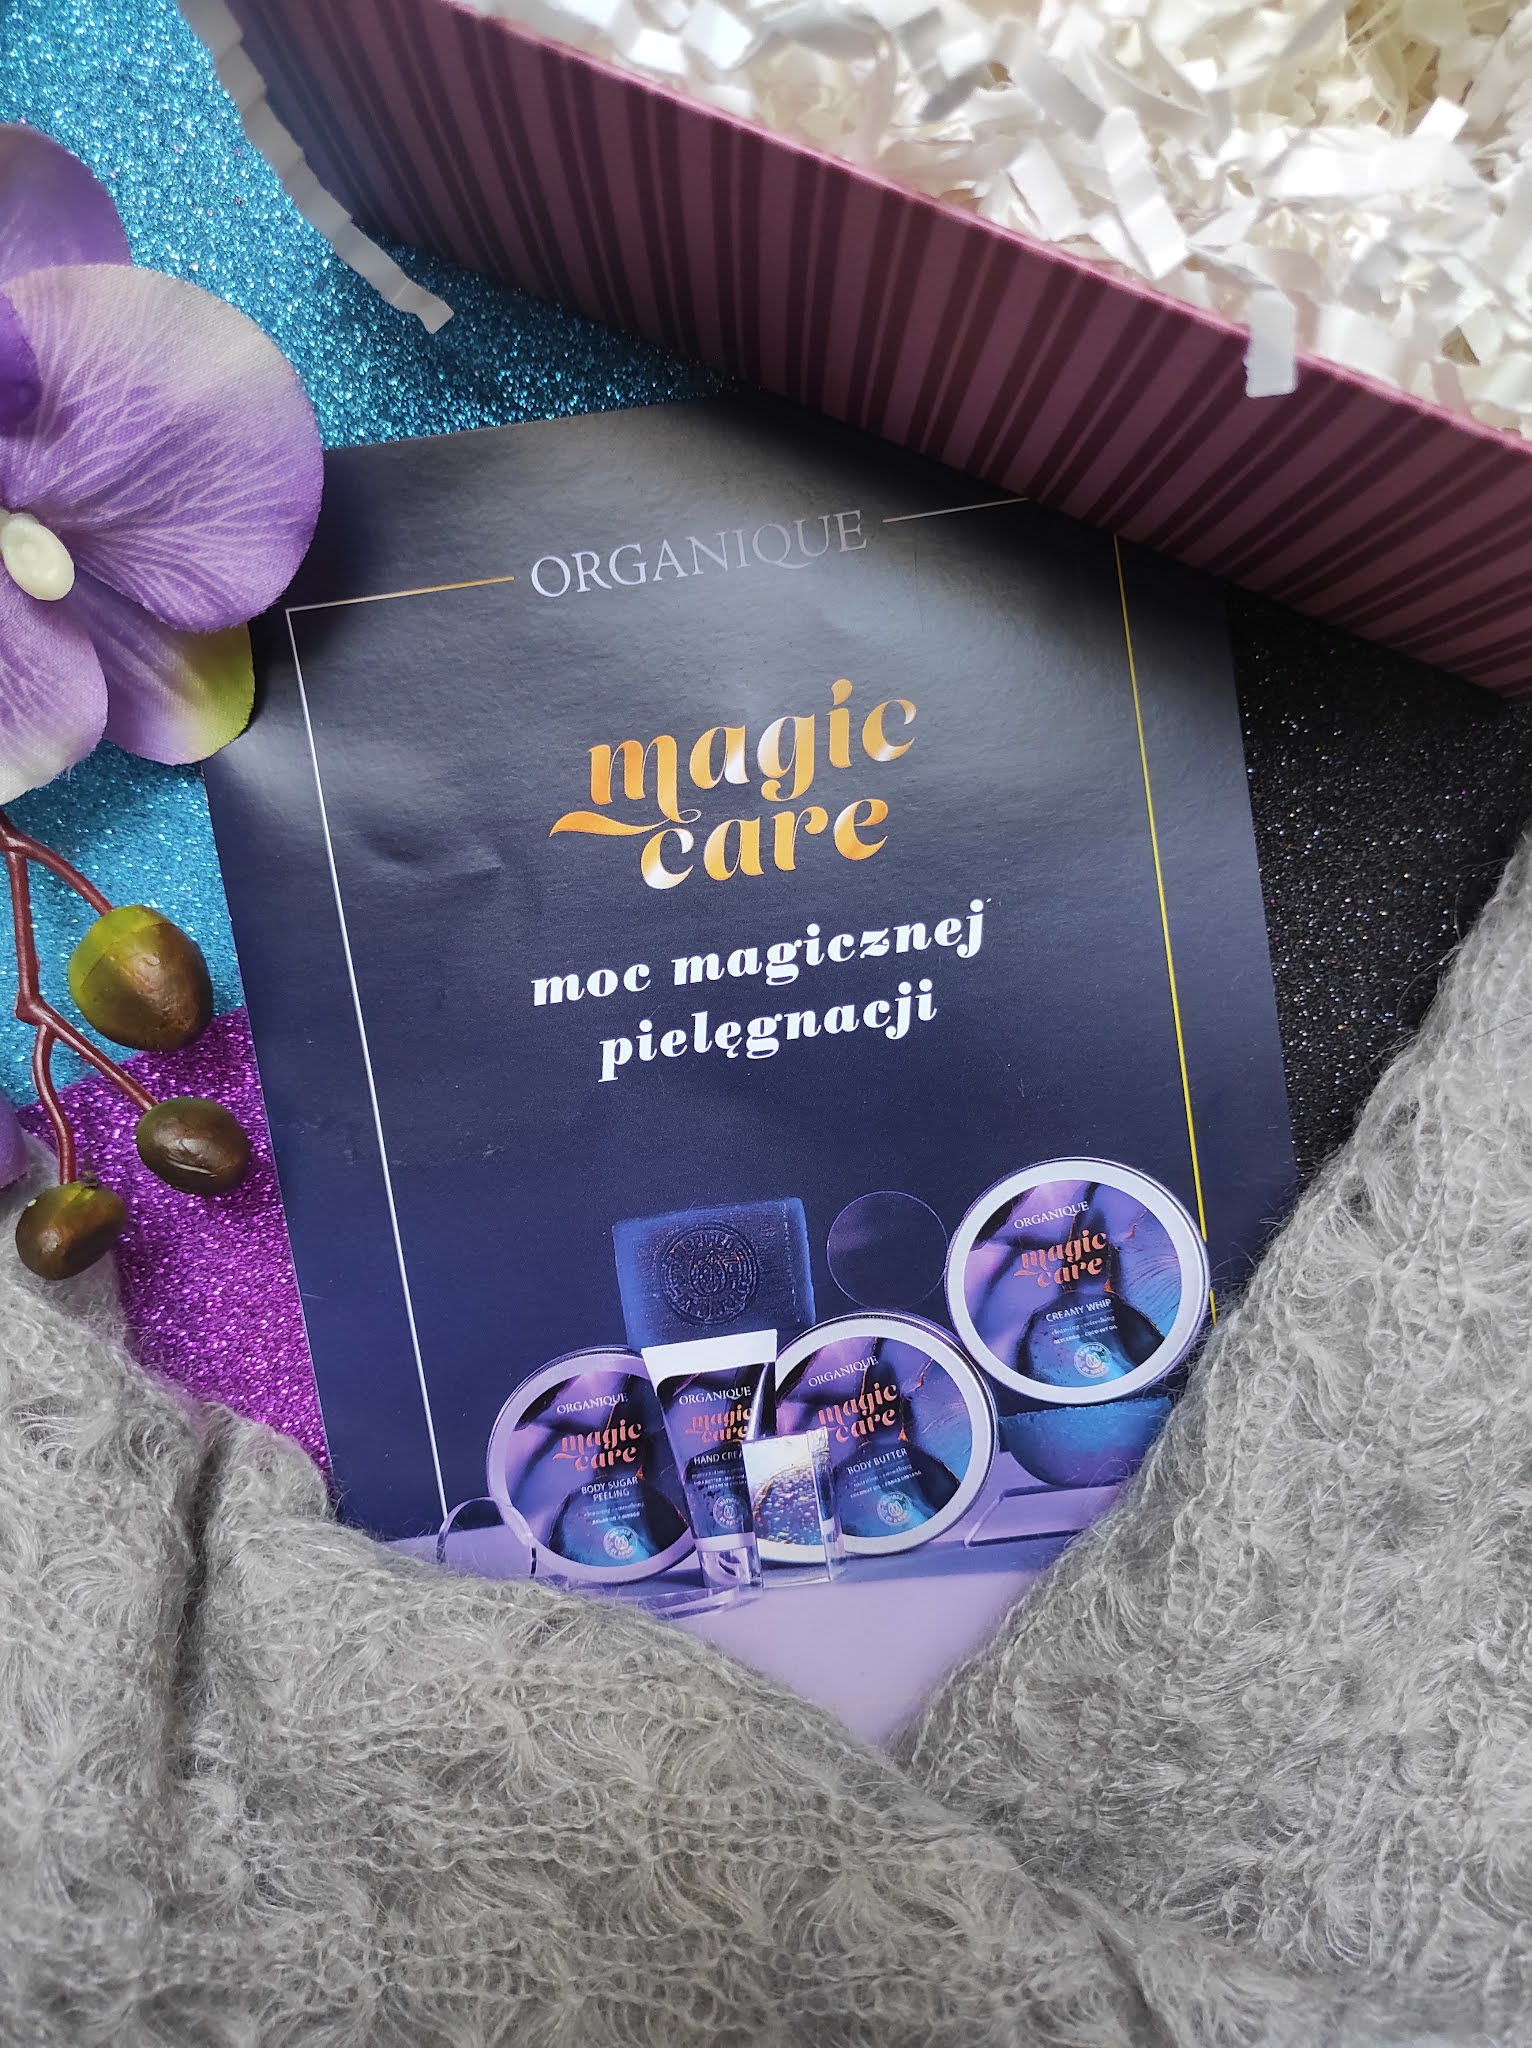 Magic Care - magiczny rytuał pielęgnacyjny od Organique